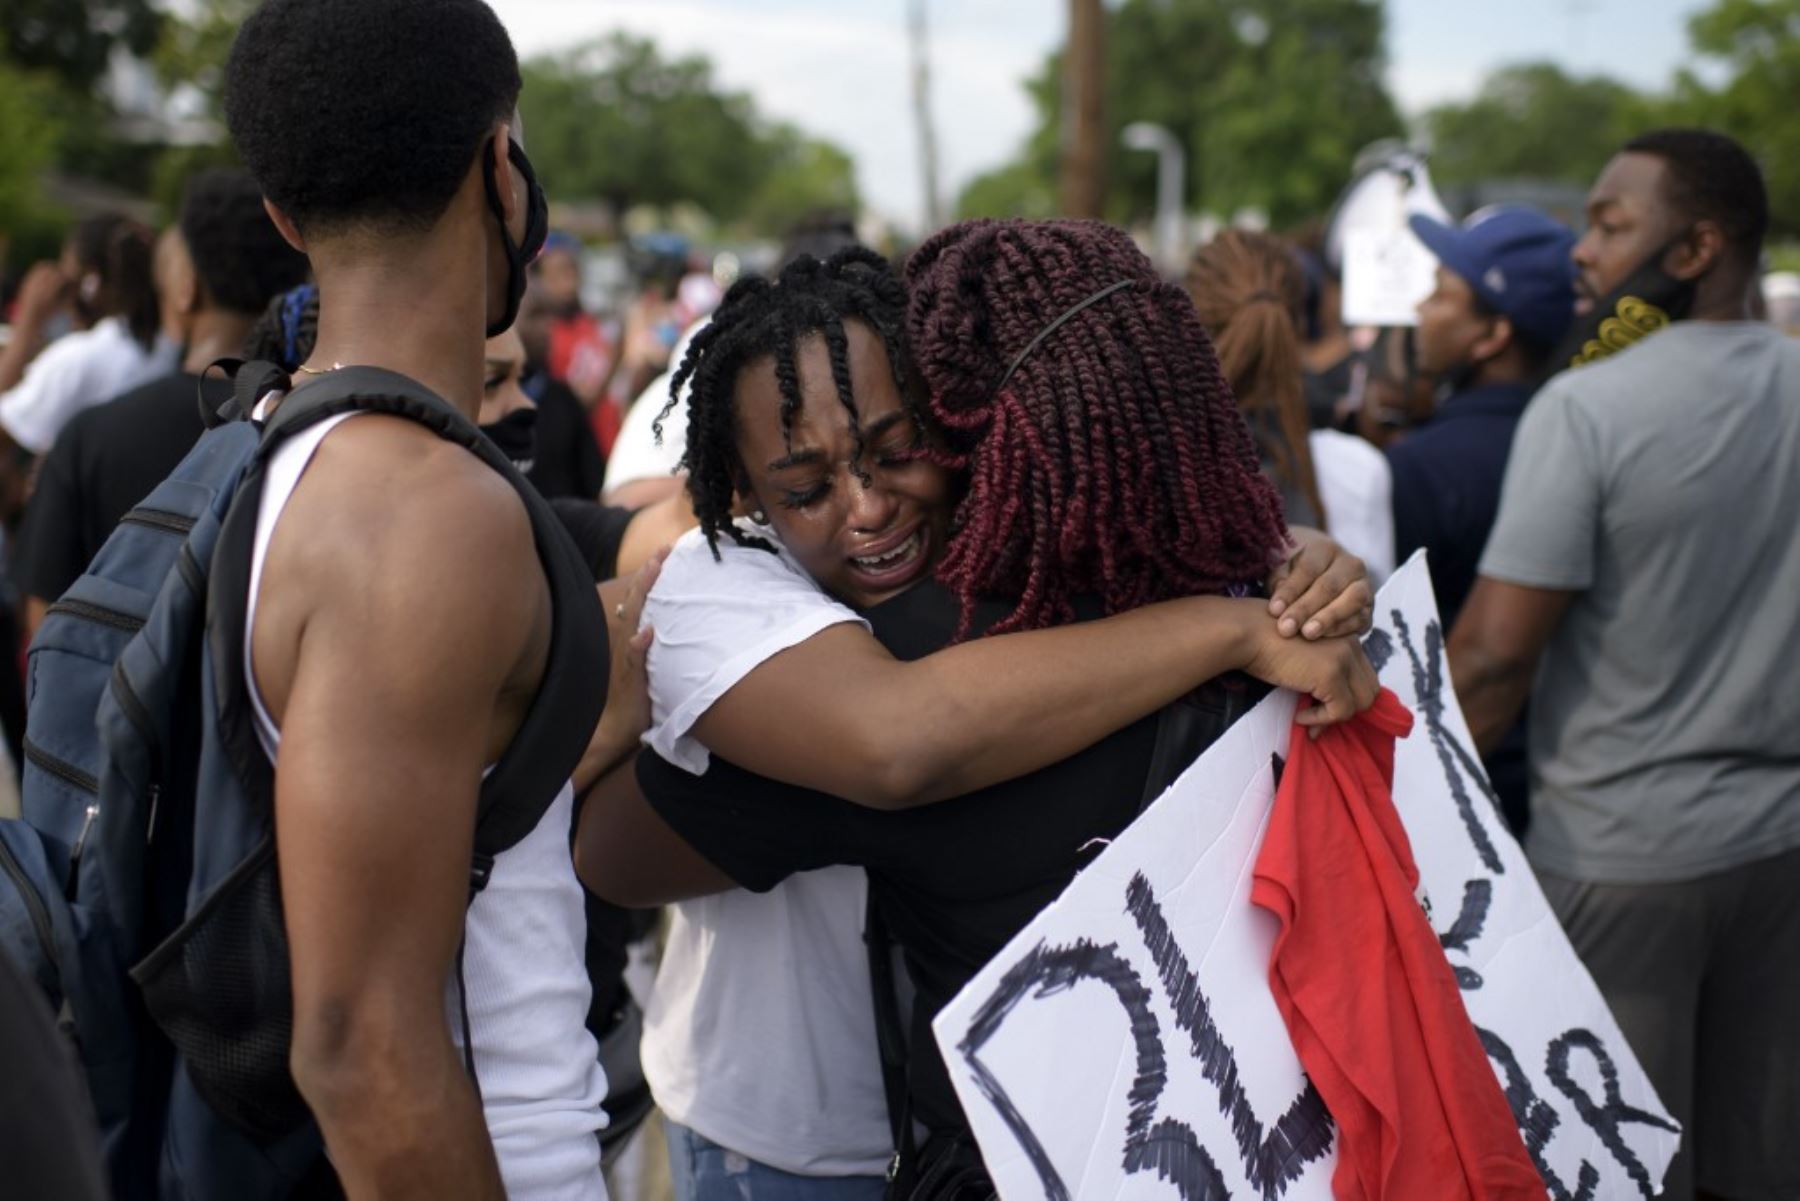 La sobrina de George Floyd, Gabrielle Thompson, llora en los hombros de otra mujer durante un evento de protesta "Justicia para George Floyd" en Houston, Texas, el 30 de mayo de 2020. Foto: AFP